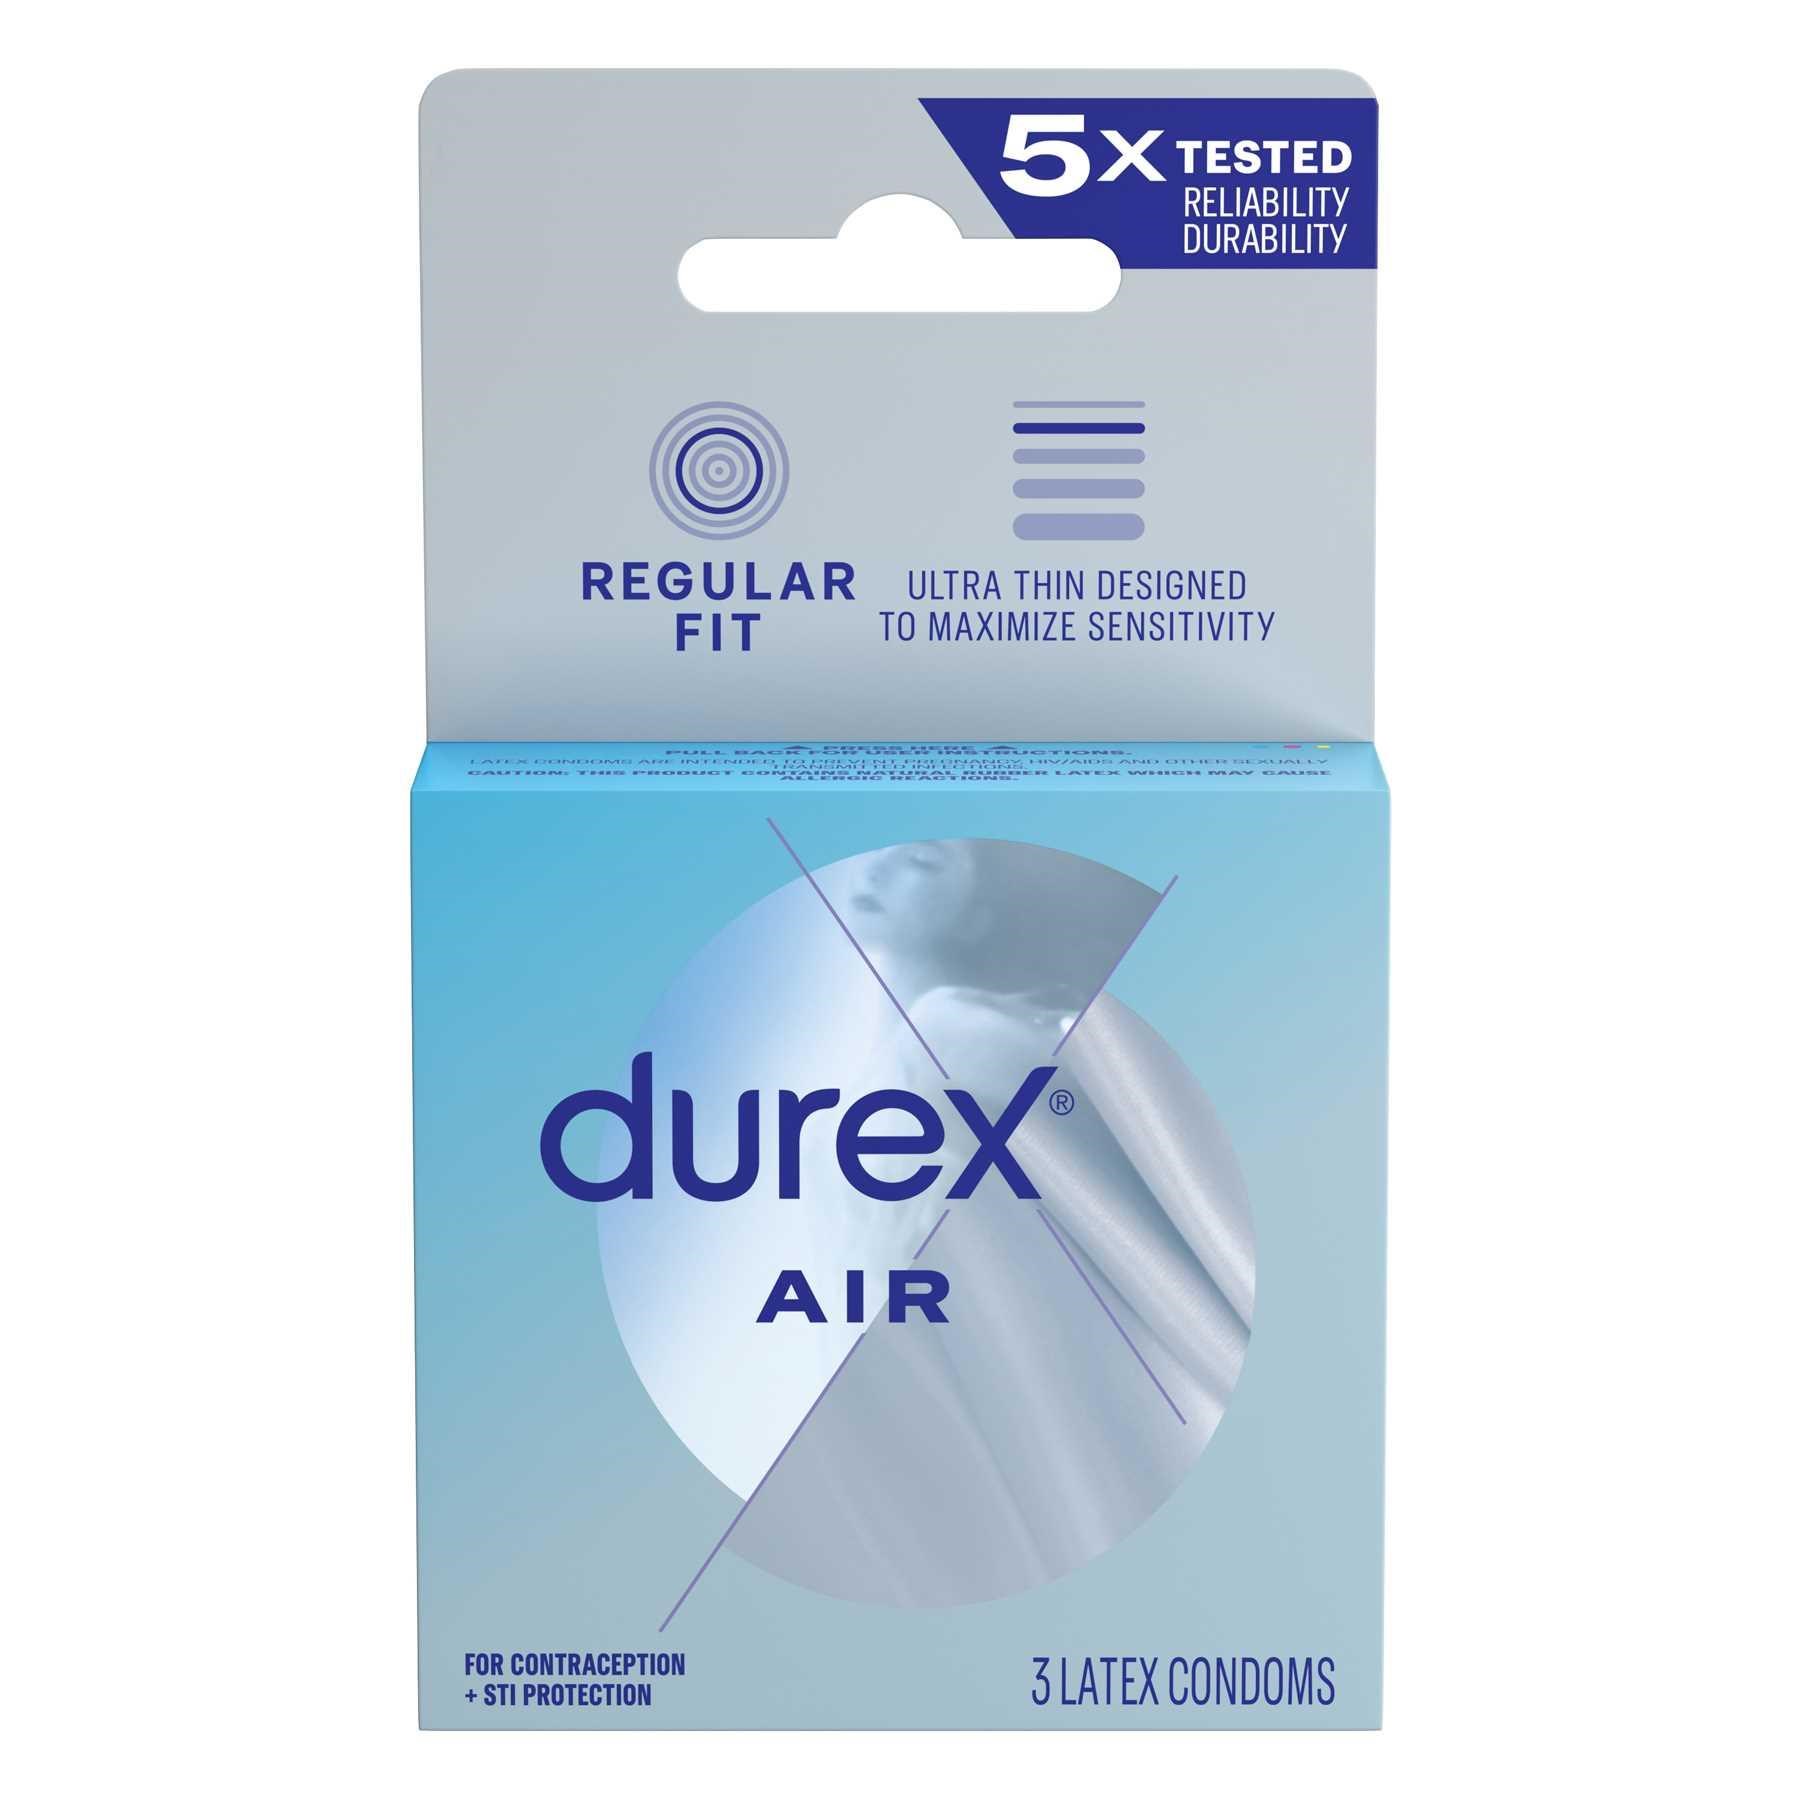 Durex Air Condoms - 3 count box